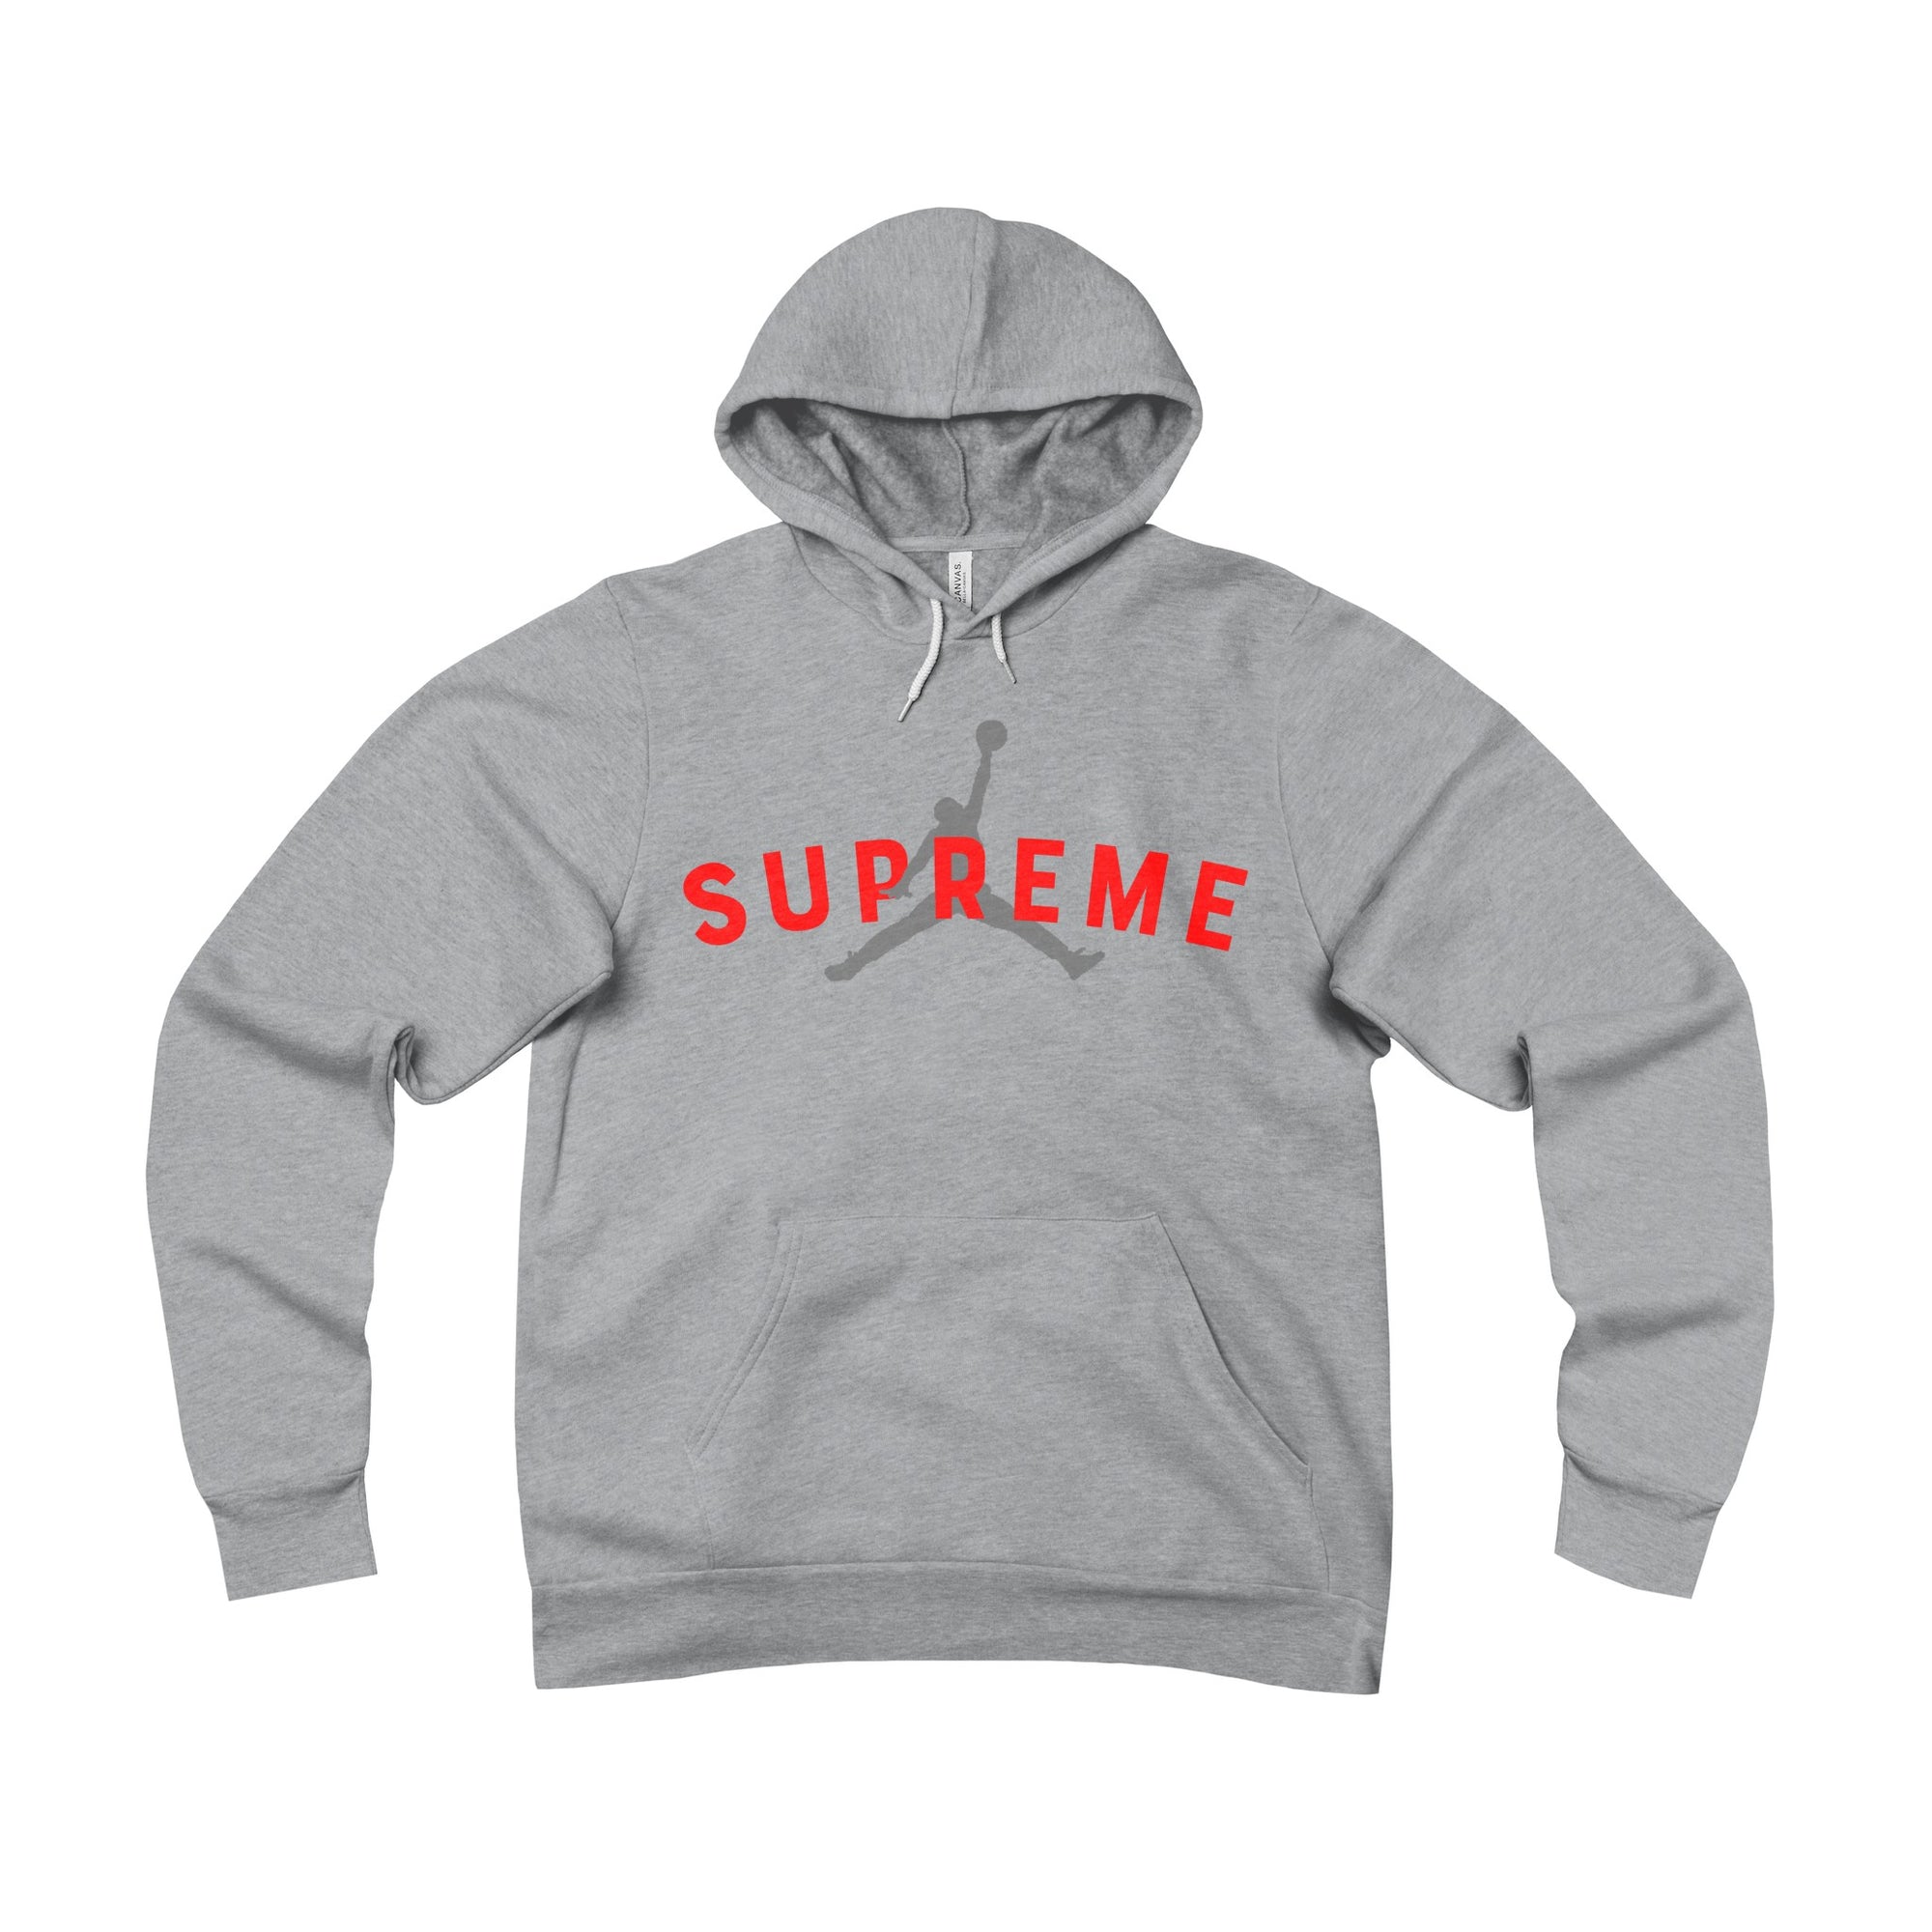 Men's Supreme Hoodies, Supreme Sweatshirts